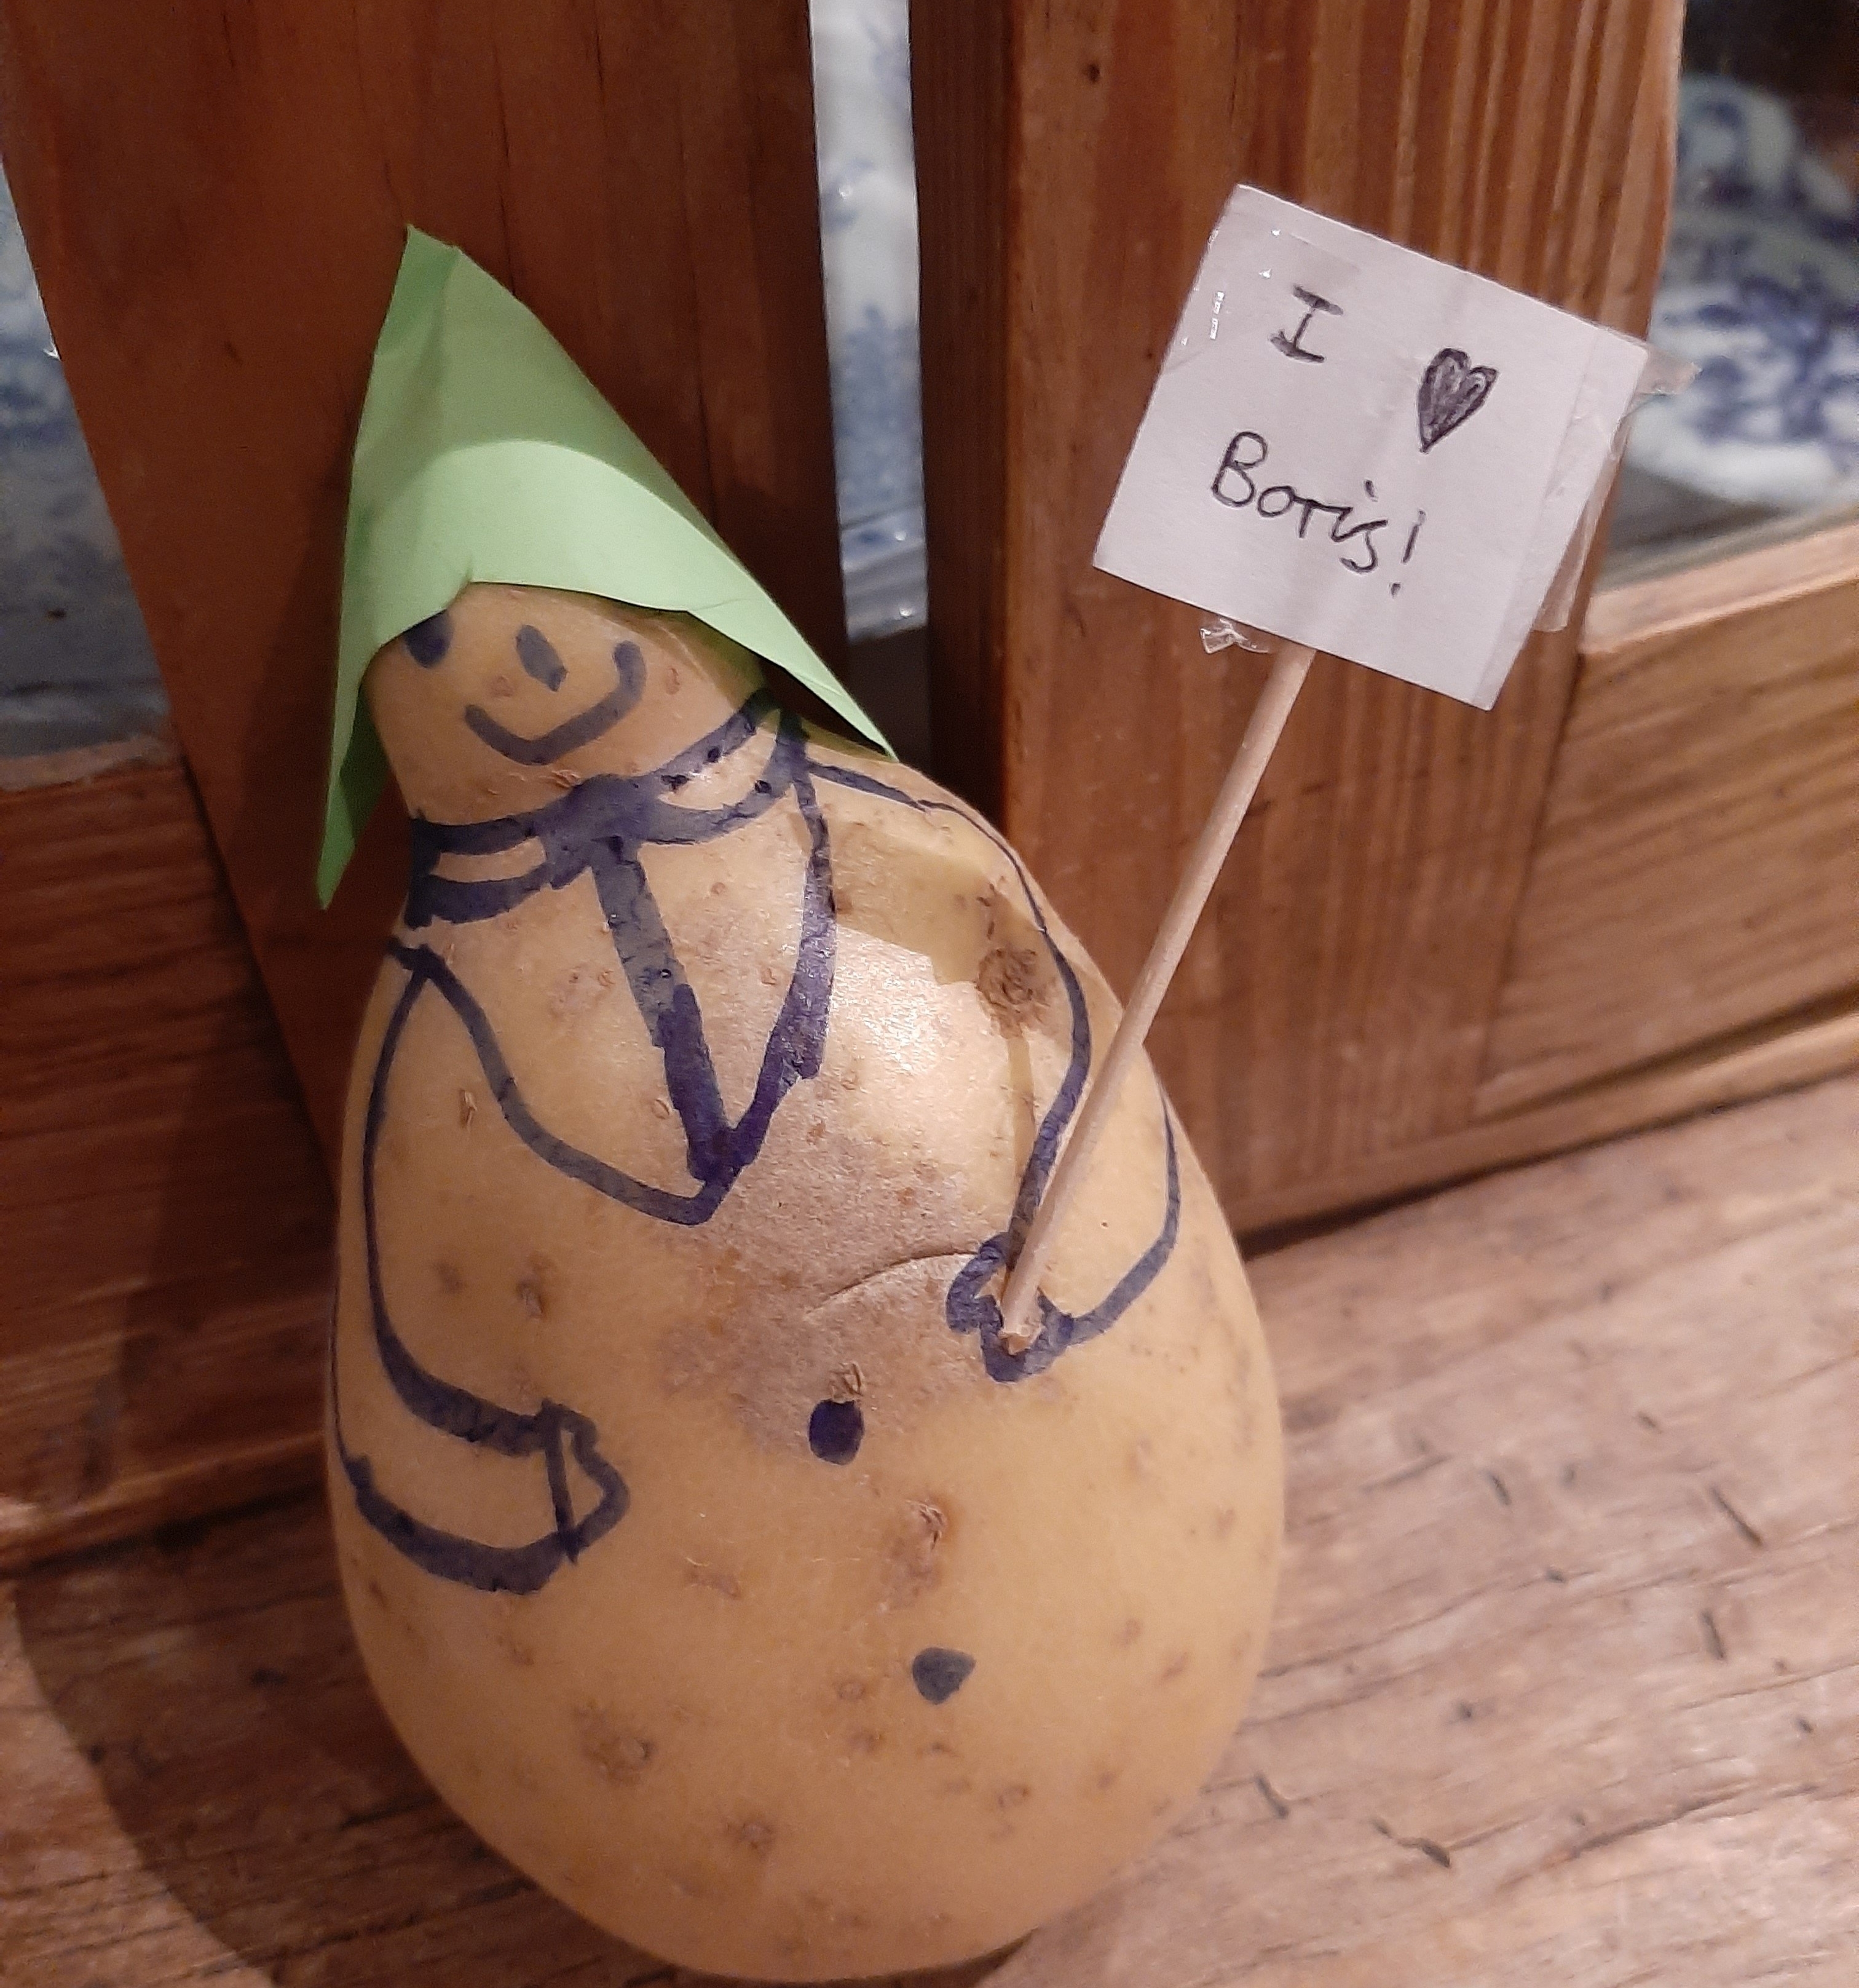 Boris Potato